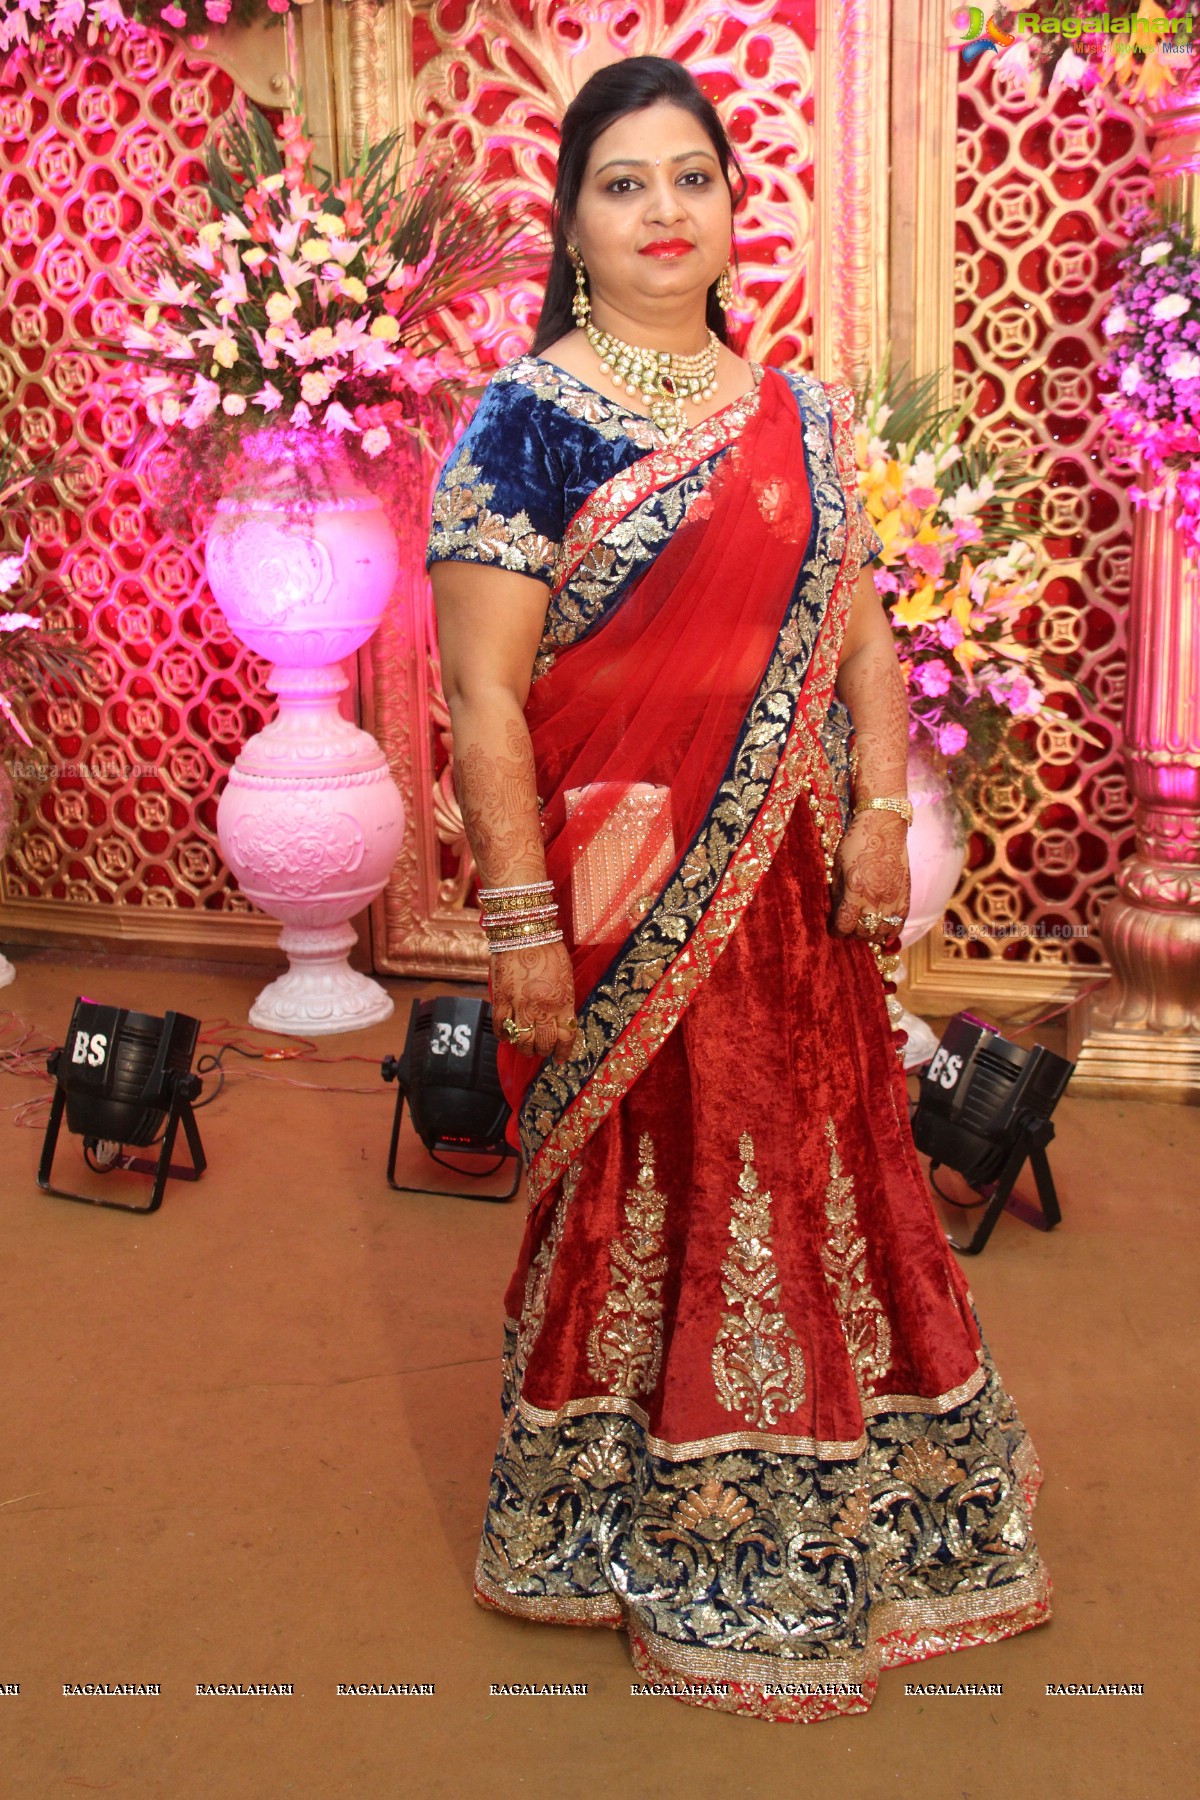 Navneet-Pooja Wedding Reception at Haryana Bhavan, Hyderabad